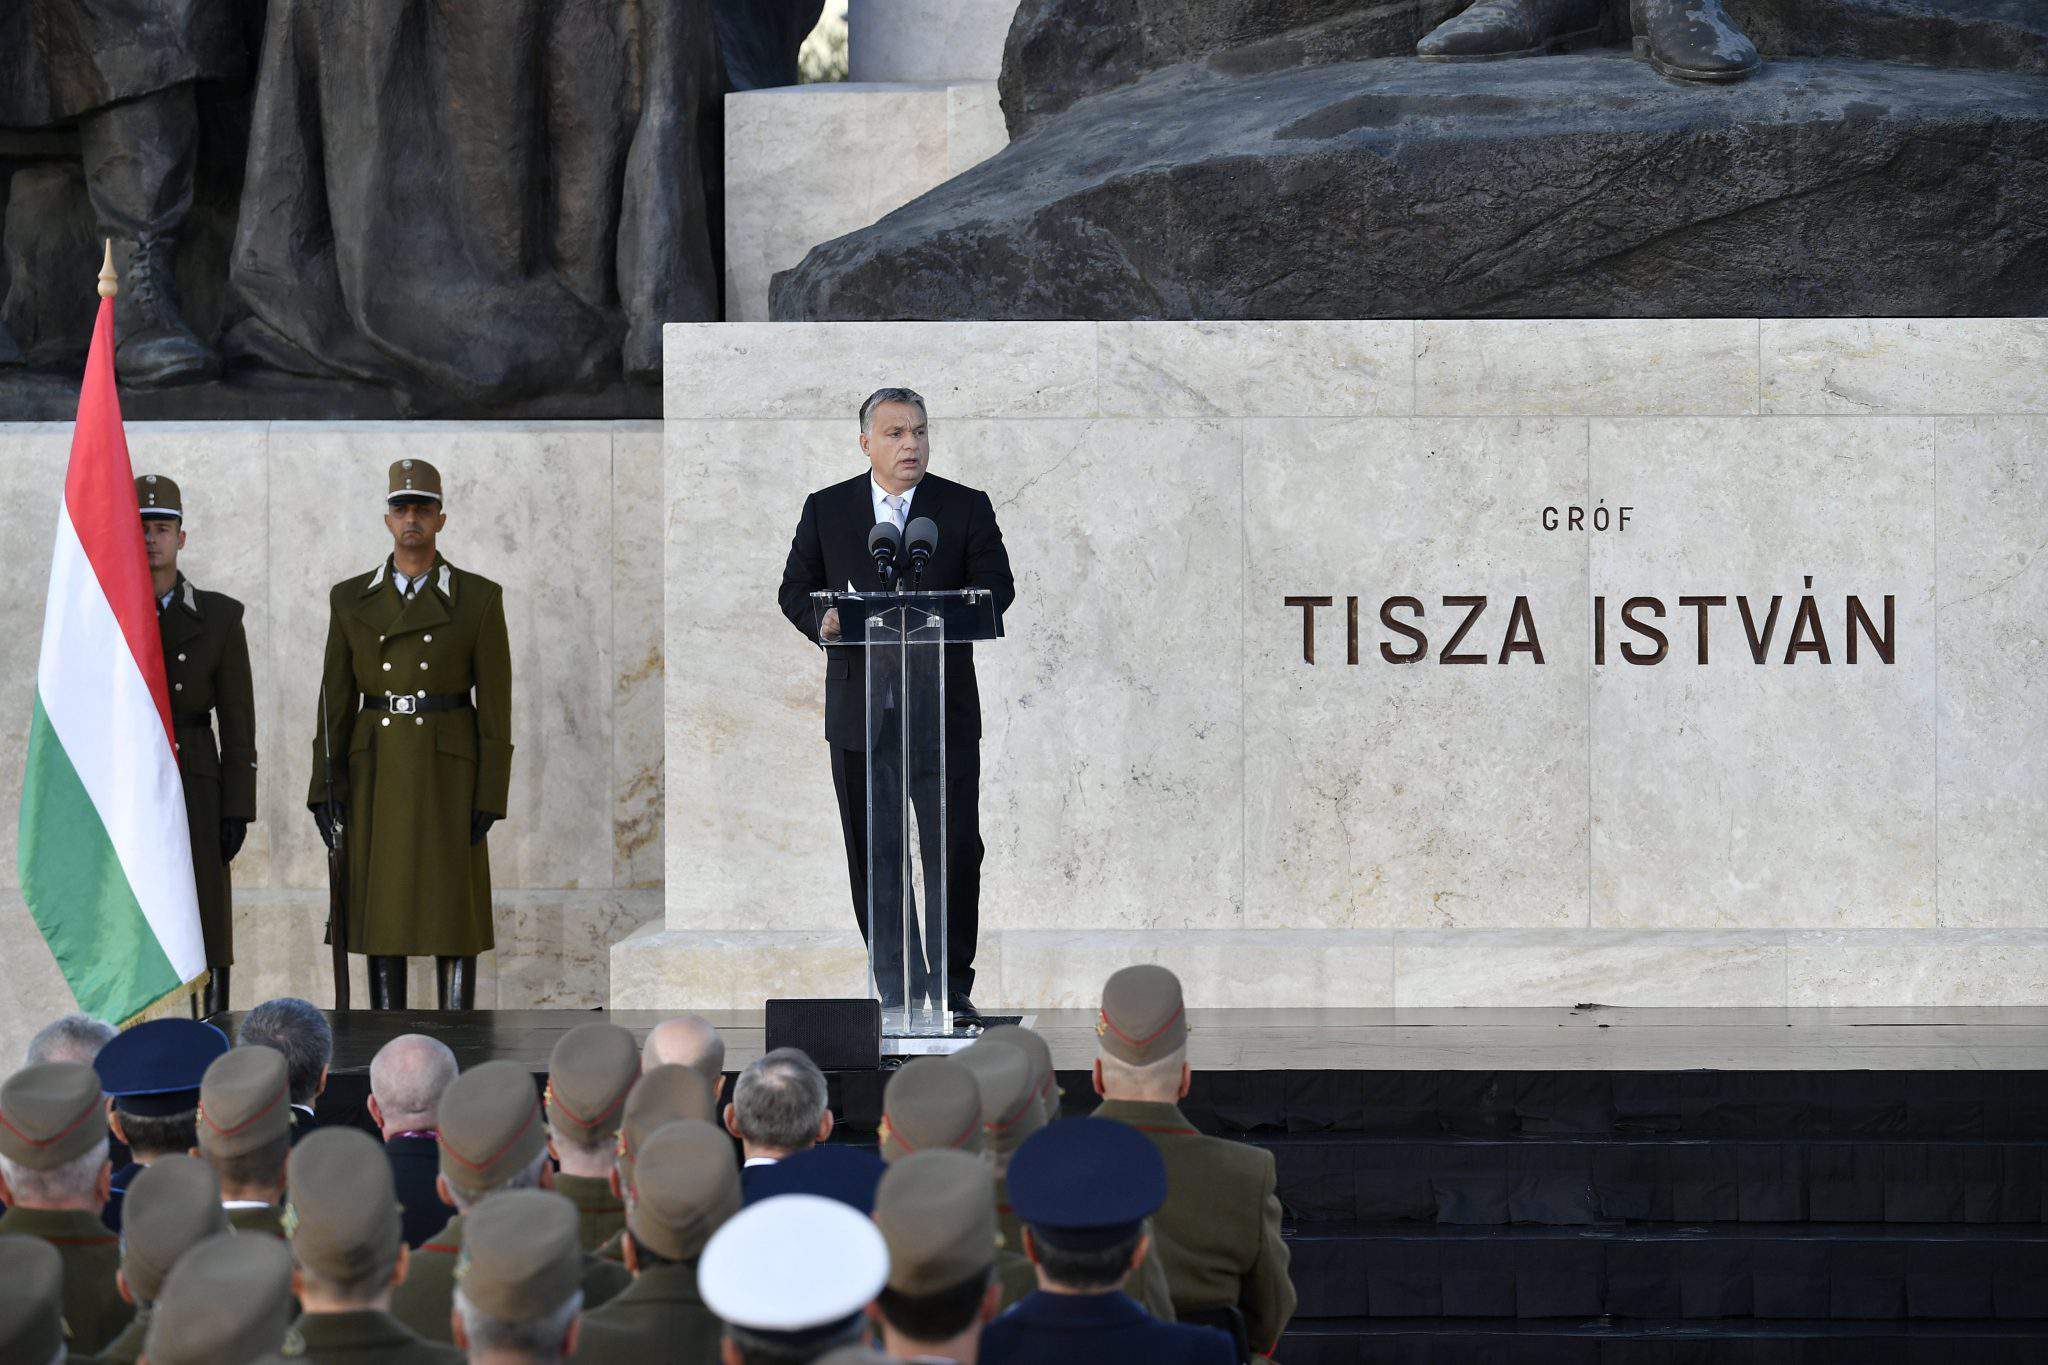 Tisza commemoration